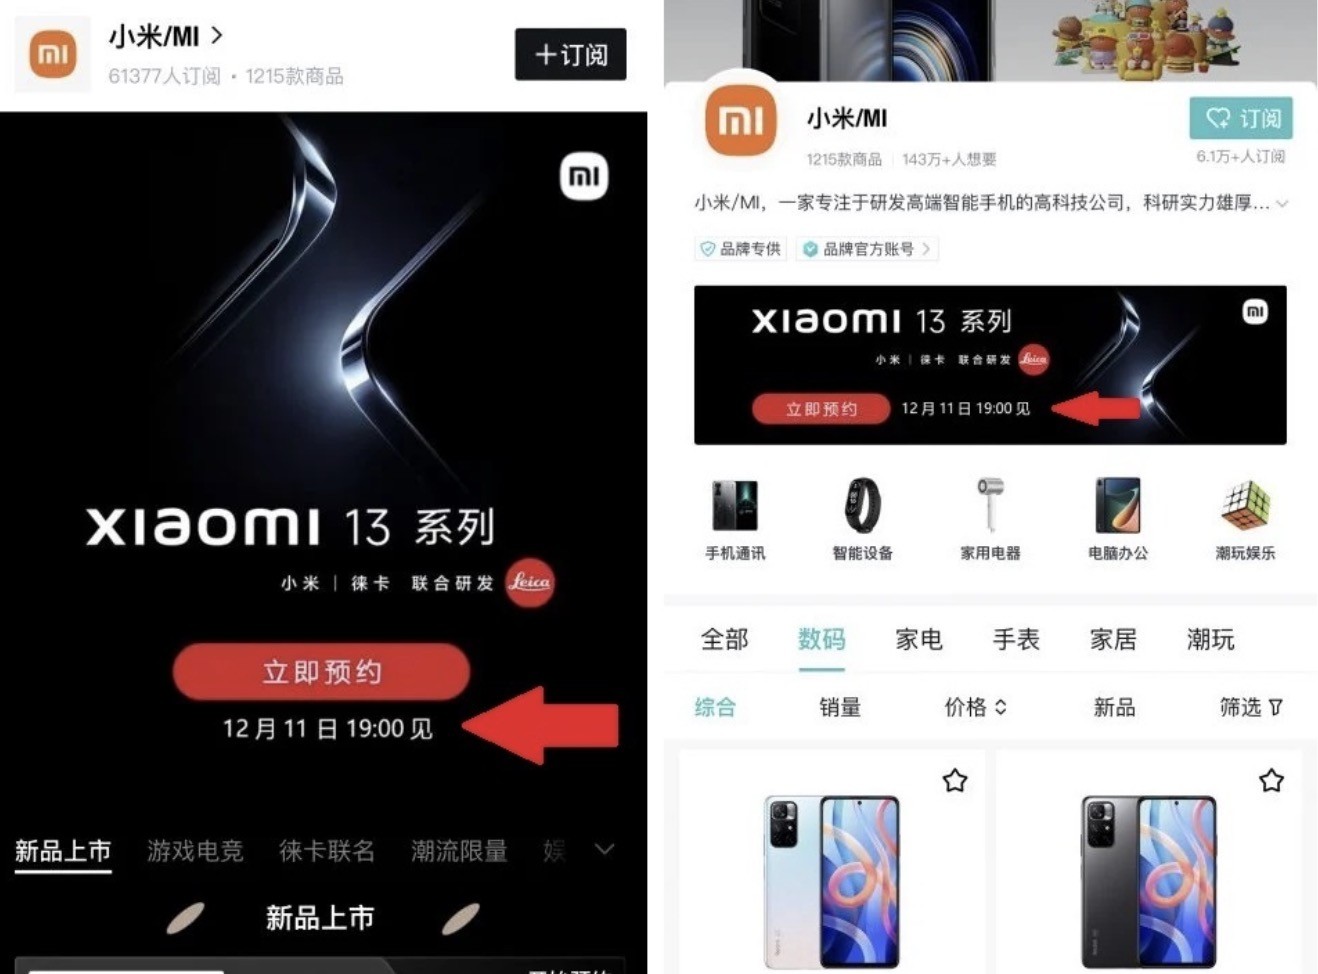 Data prezentacji Xiaomi 13 ujawniona ciekawostki xiaomi 13, Data prezentacji Xiaomi 13  Data prezentacji Xiaomi 13 została ujawniona. Informacja pojawiła się na banerach reklamowych na chińskich portalach społecznościowych. xiaomi13 1